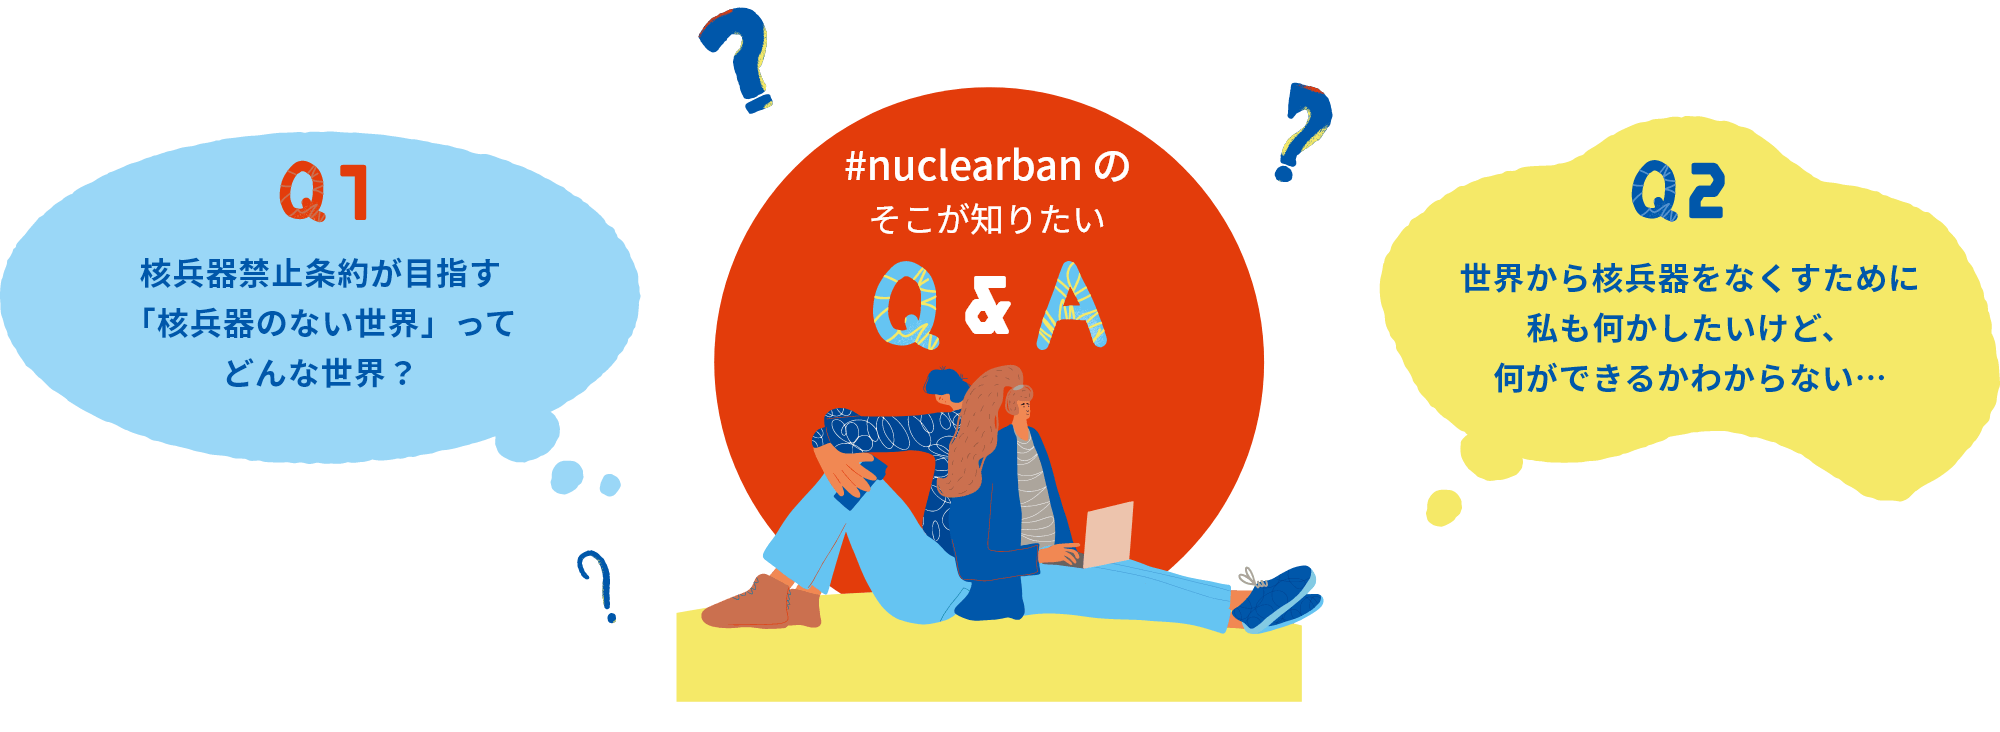 画像:#nuclearbanのそこが知りたい